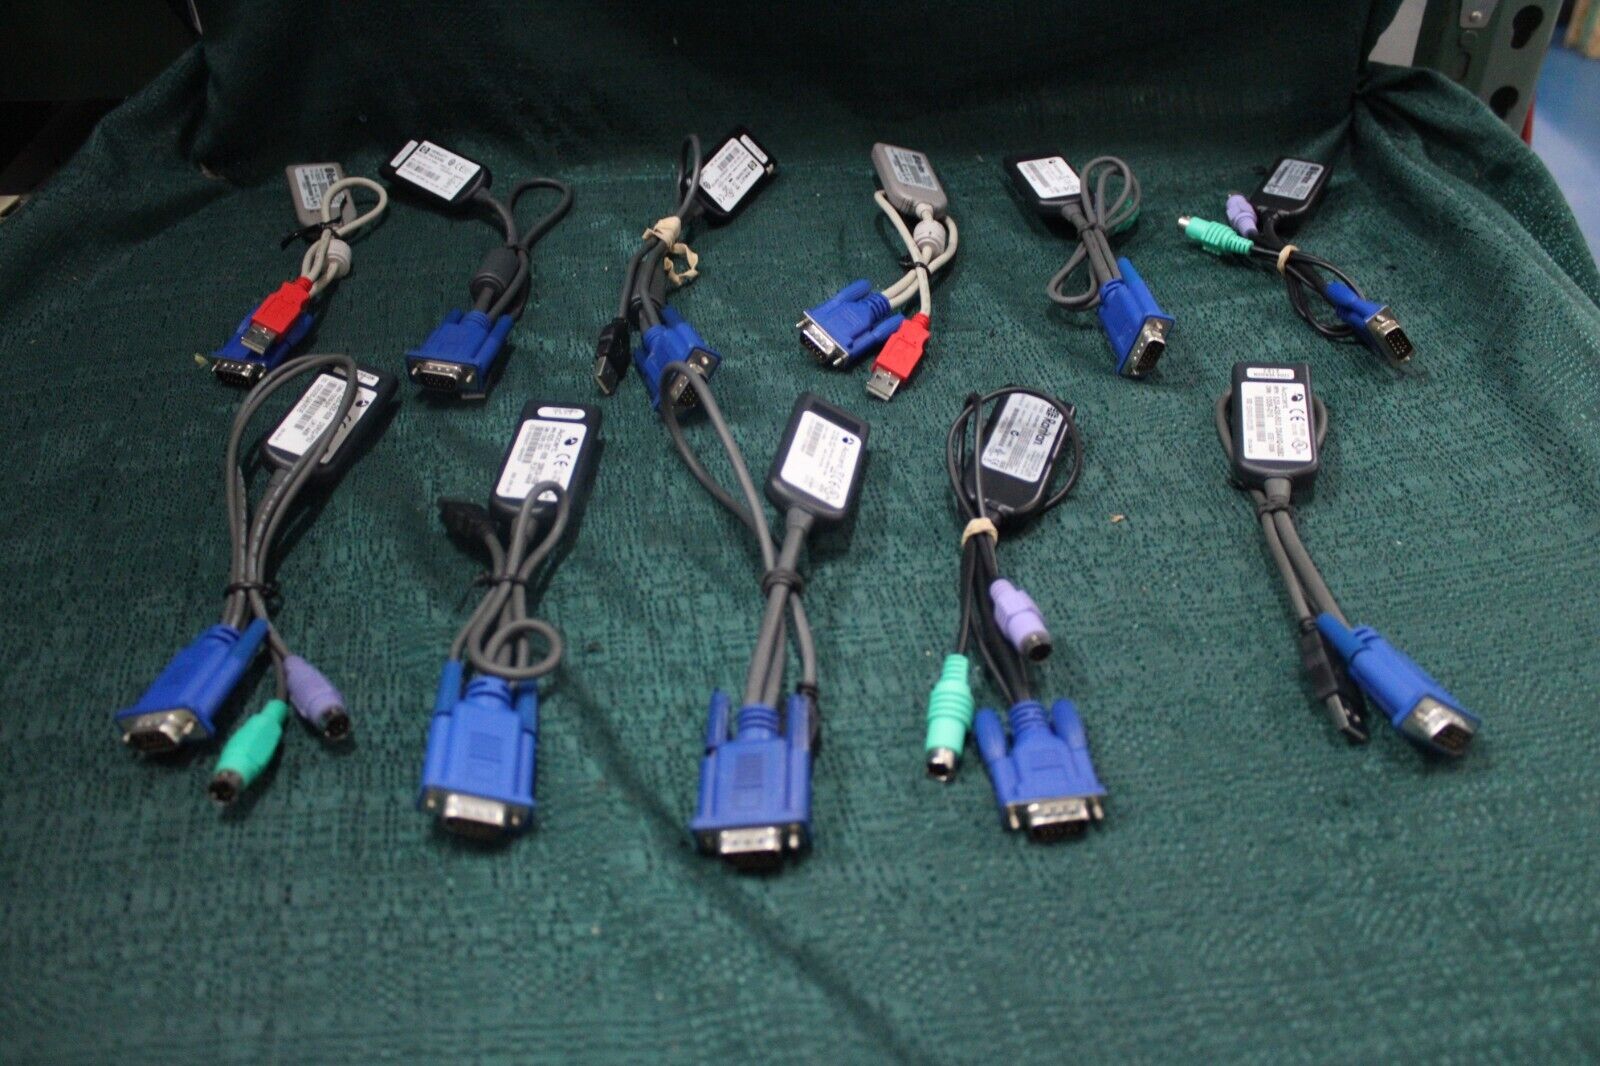 Mixed Lot of 11 KVM Cables - Avocent, Raritan, HP - Model Names in Description